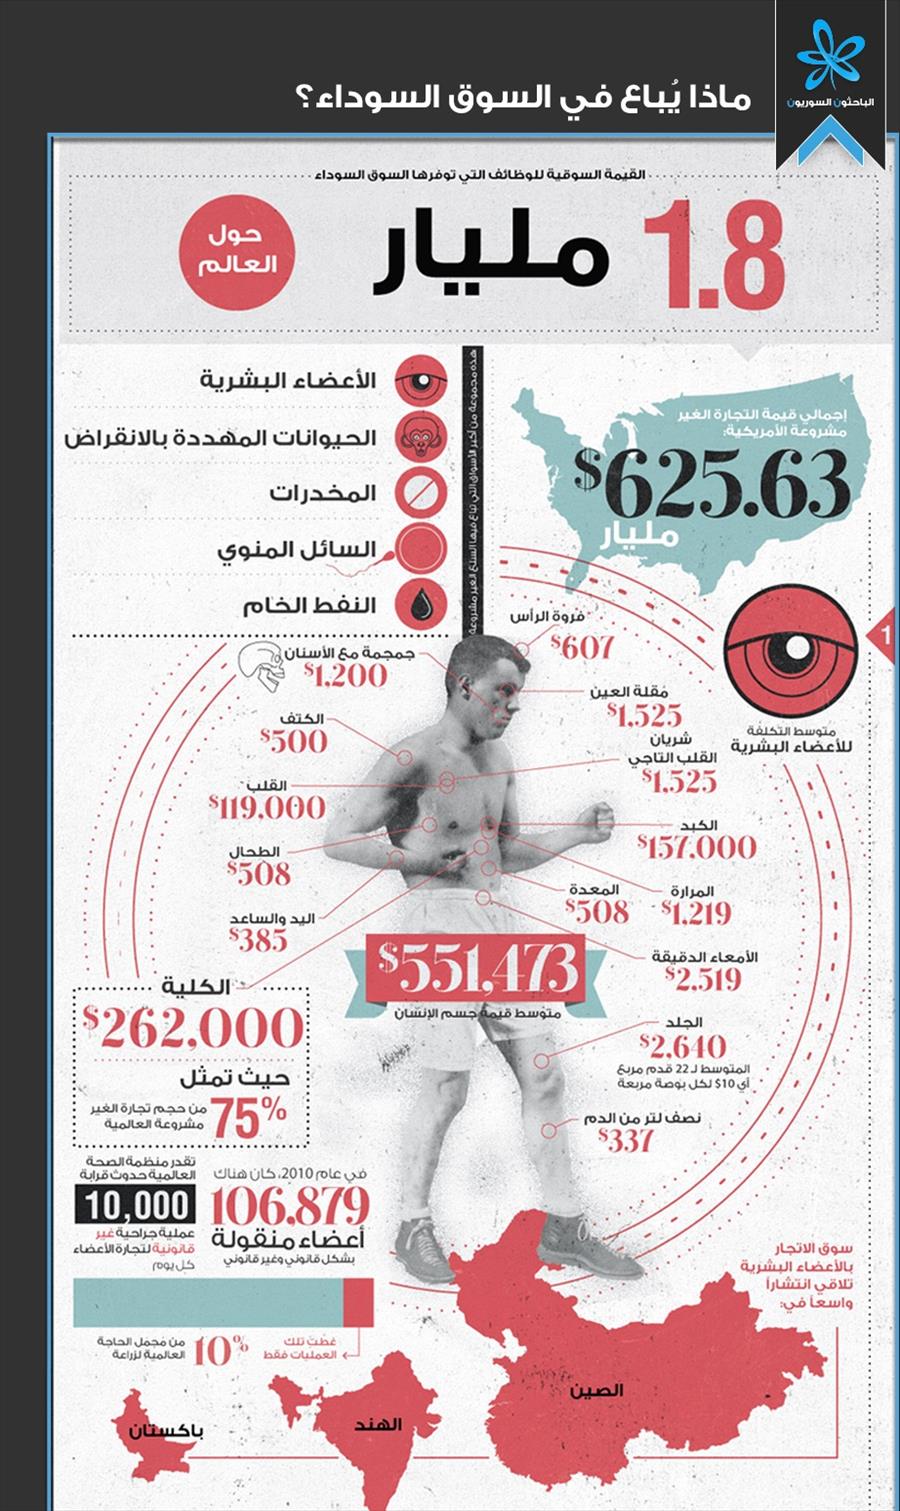 سعر قلب الانسان بالريال السعودي